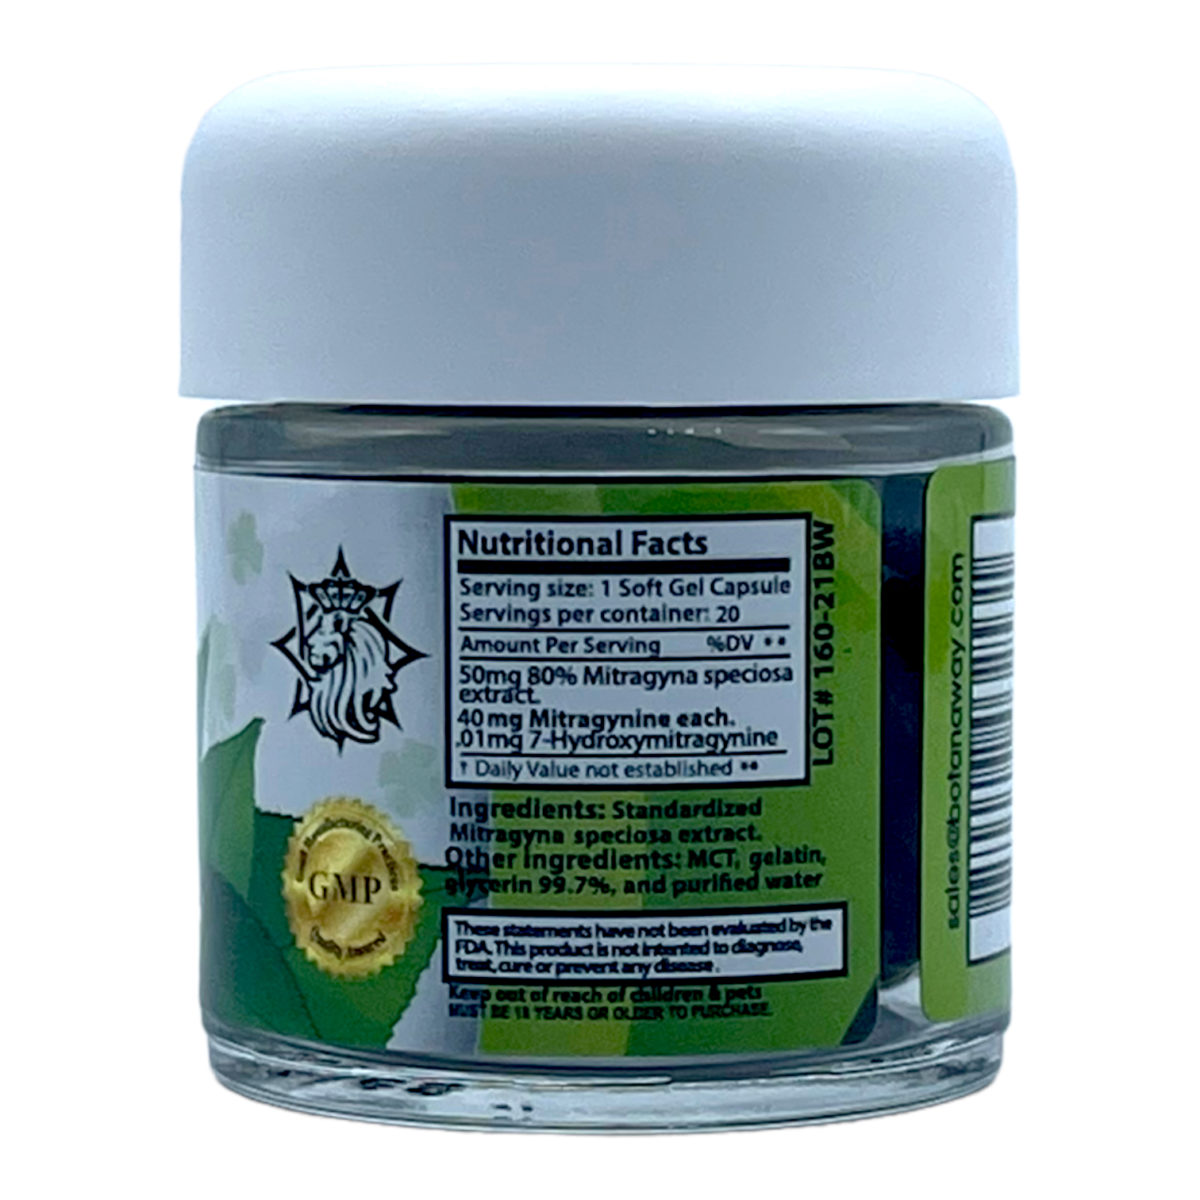 Zion Herbals Lucky Soft Gels Kratom 80% – 20 count